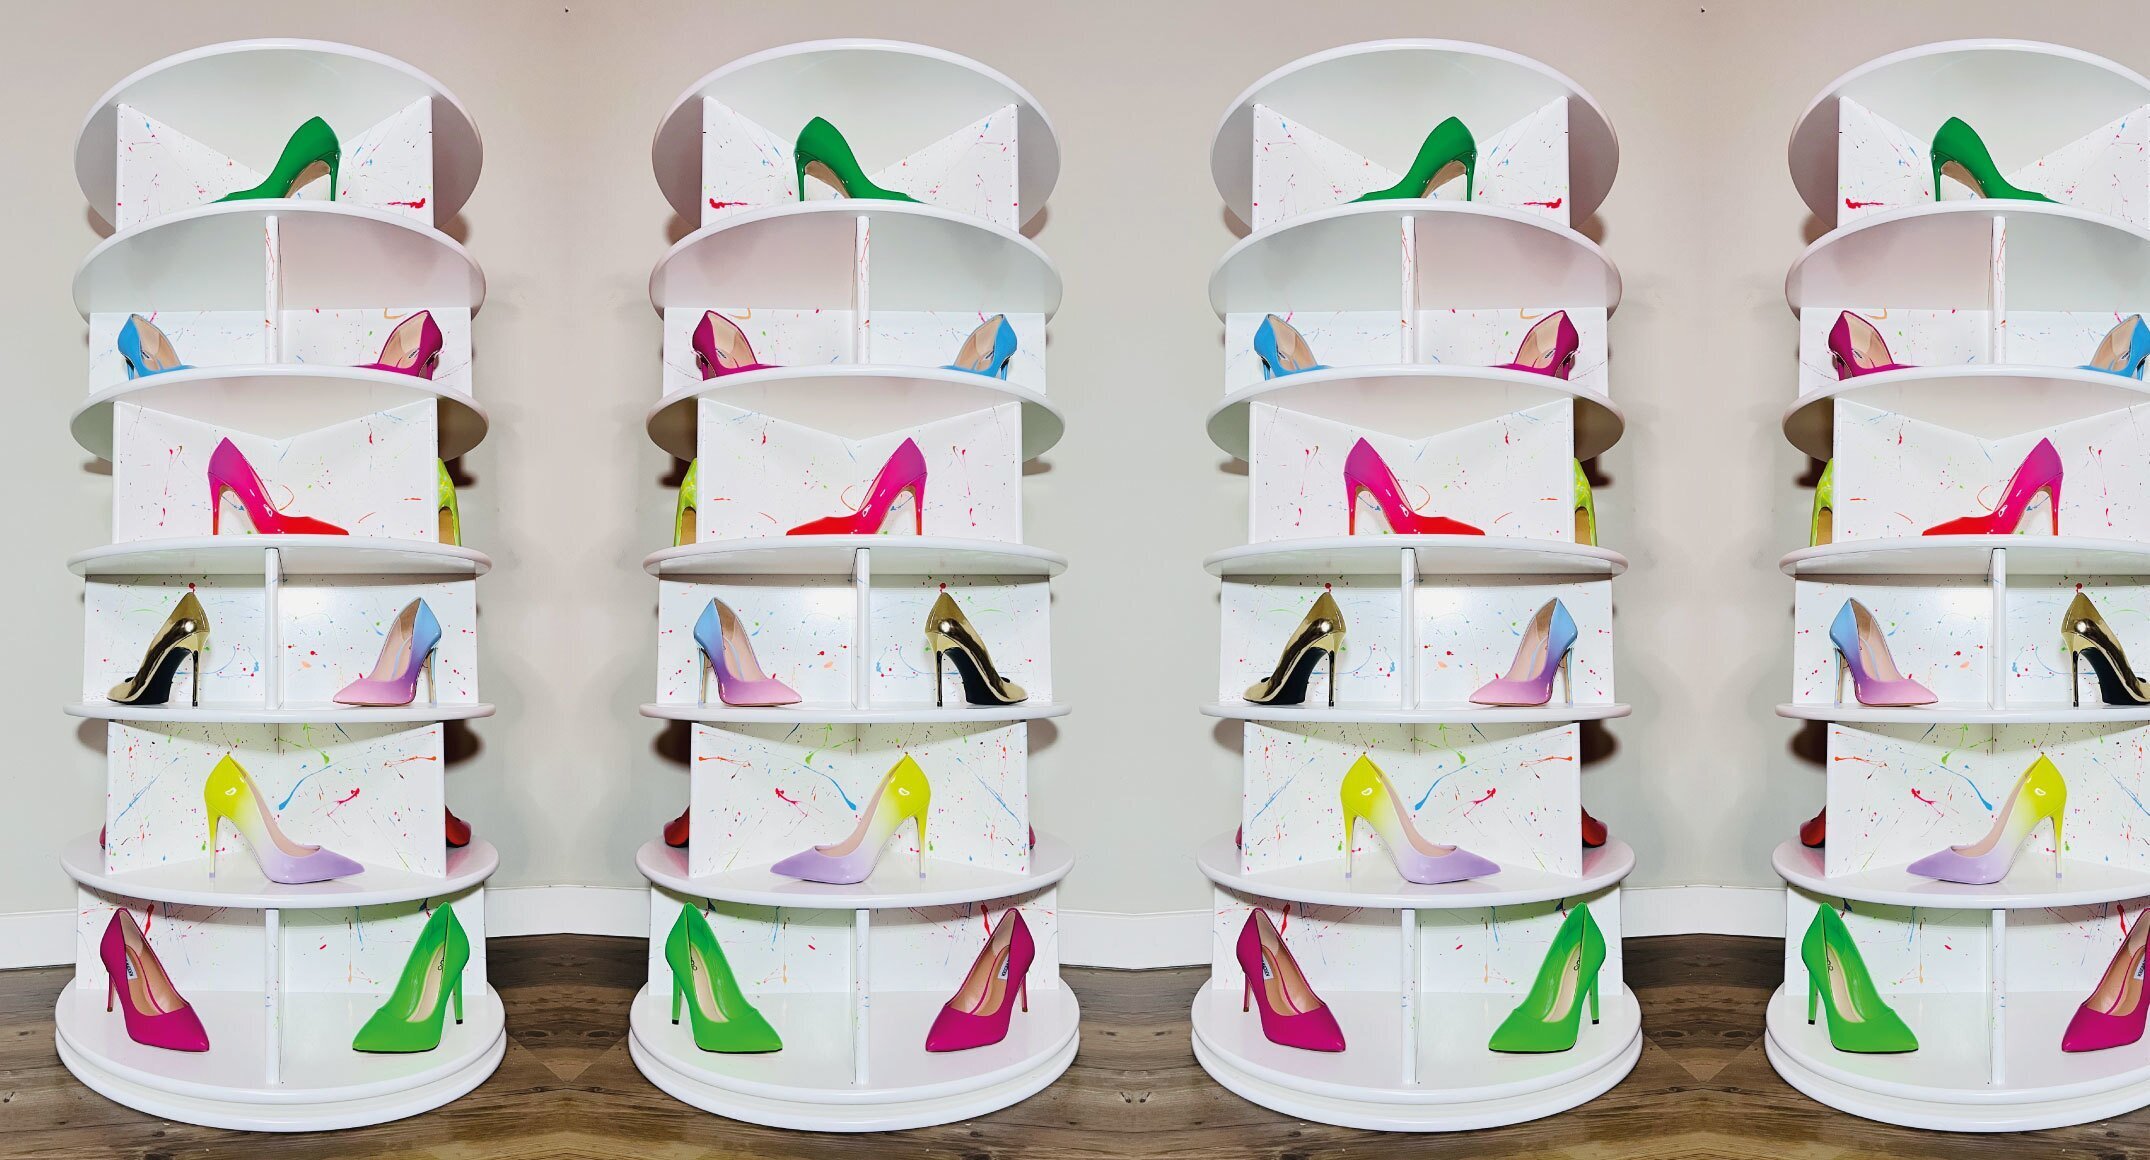 Maak je showroom/winkel compleet met deze roterende schoenen carrousel 'Lathe'